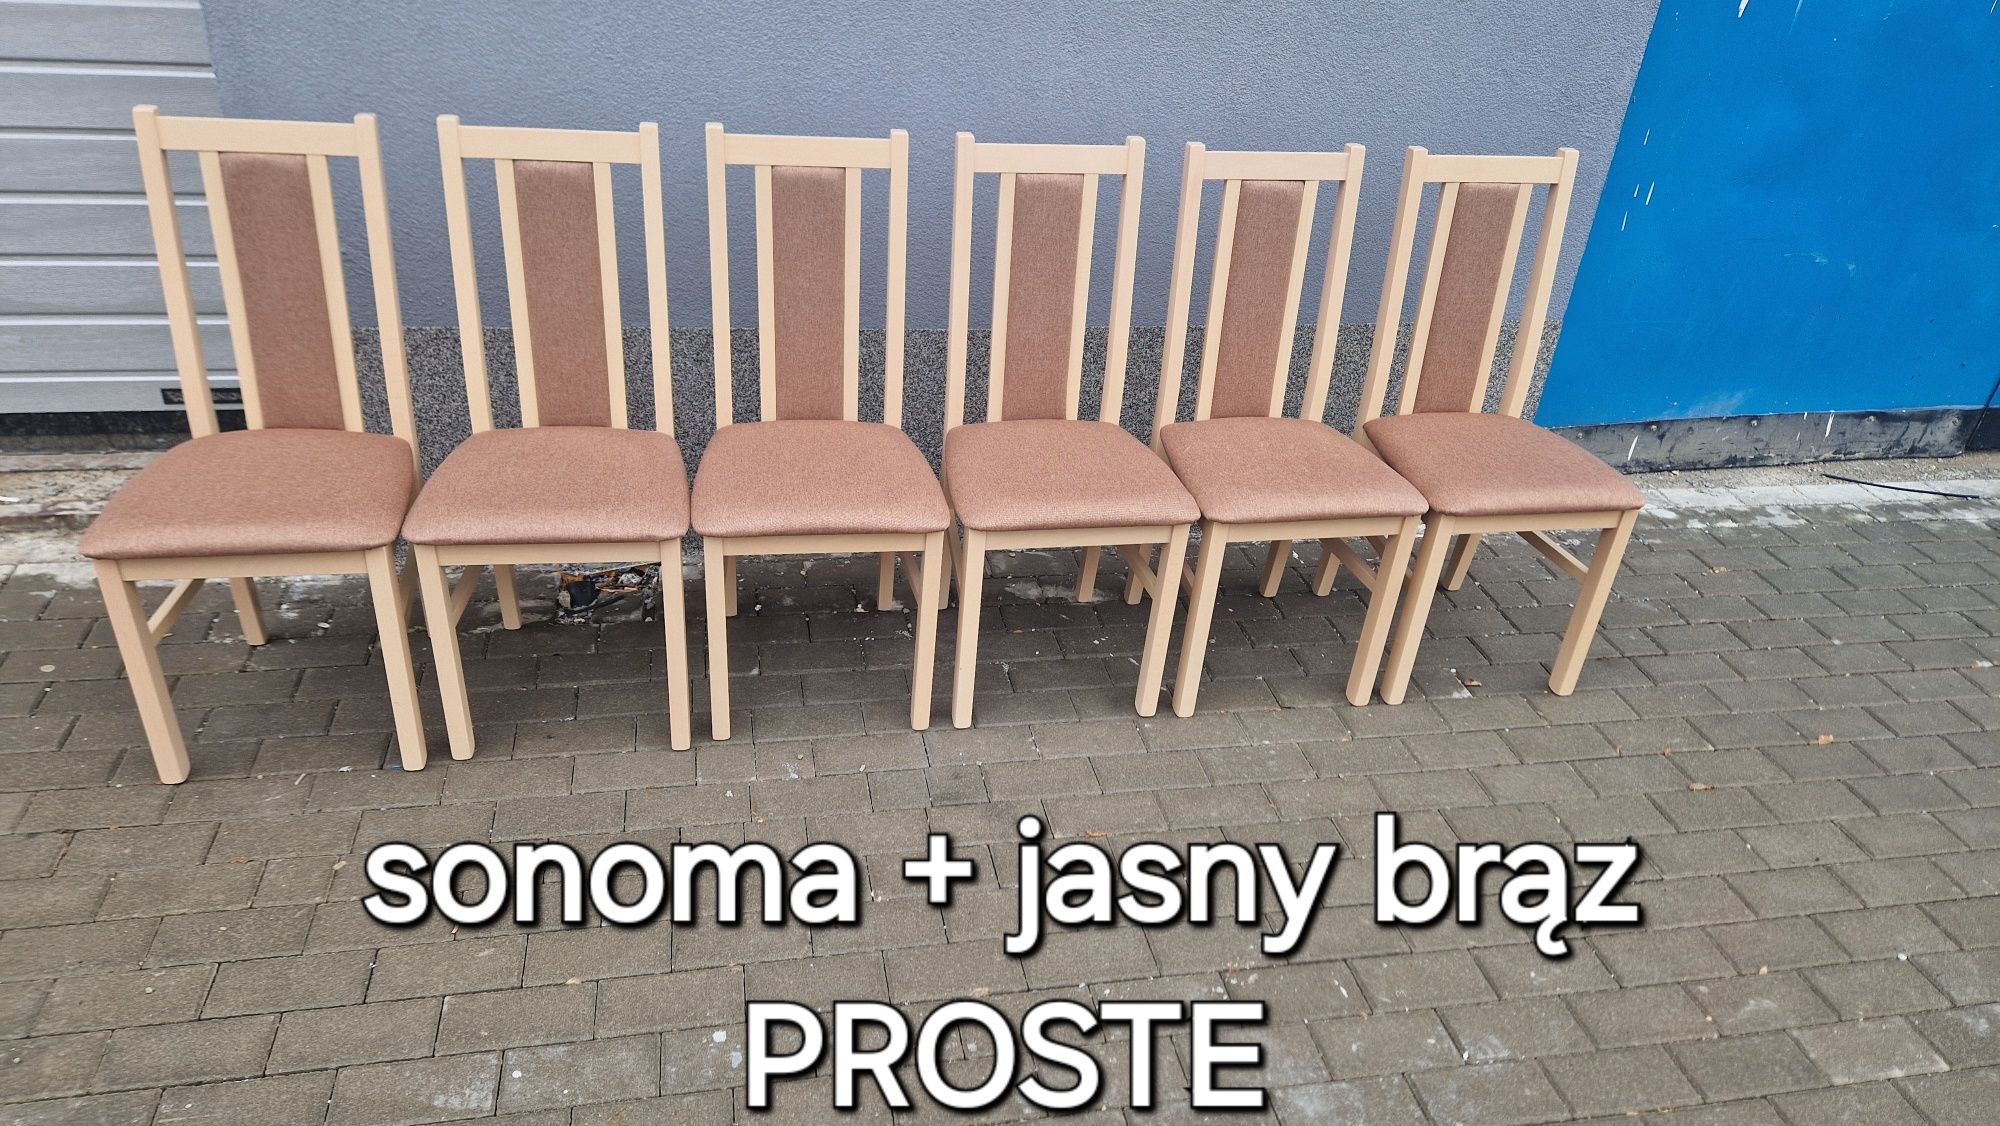 Nowe: Stół 80x140/180 + 6 krzeseł, SONOMA + JASNY BRĄZ " PROSTE "